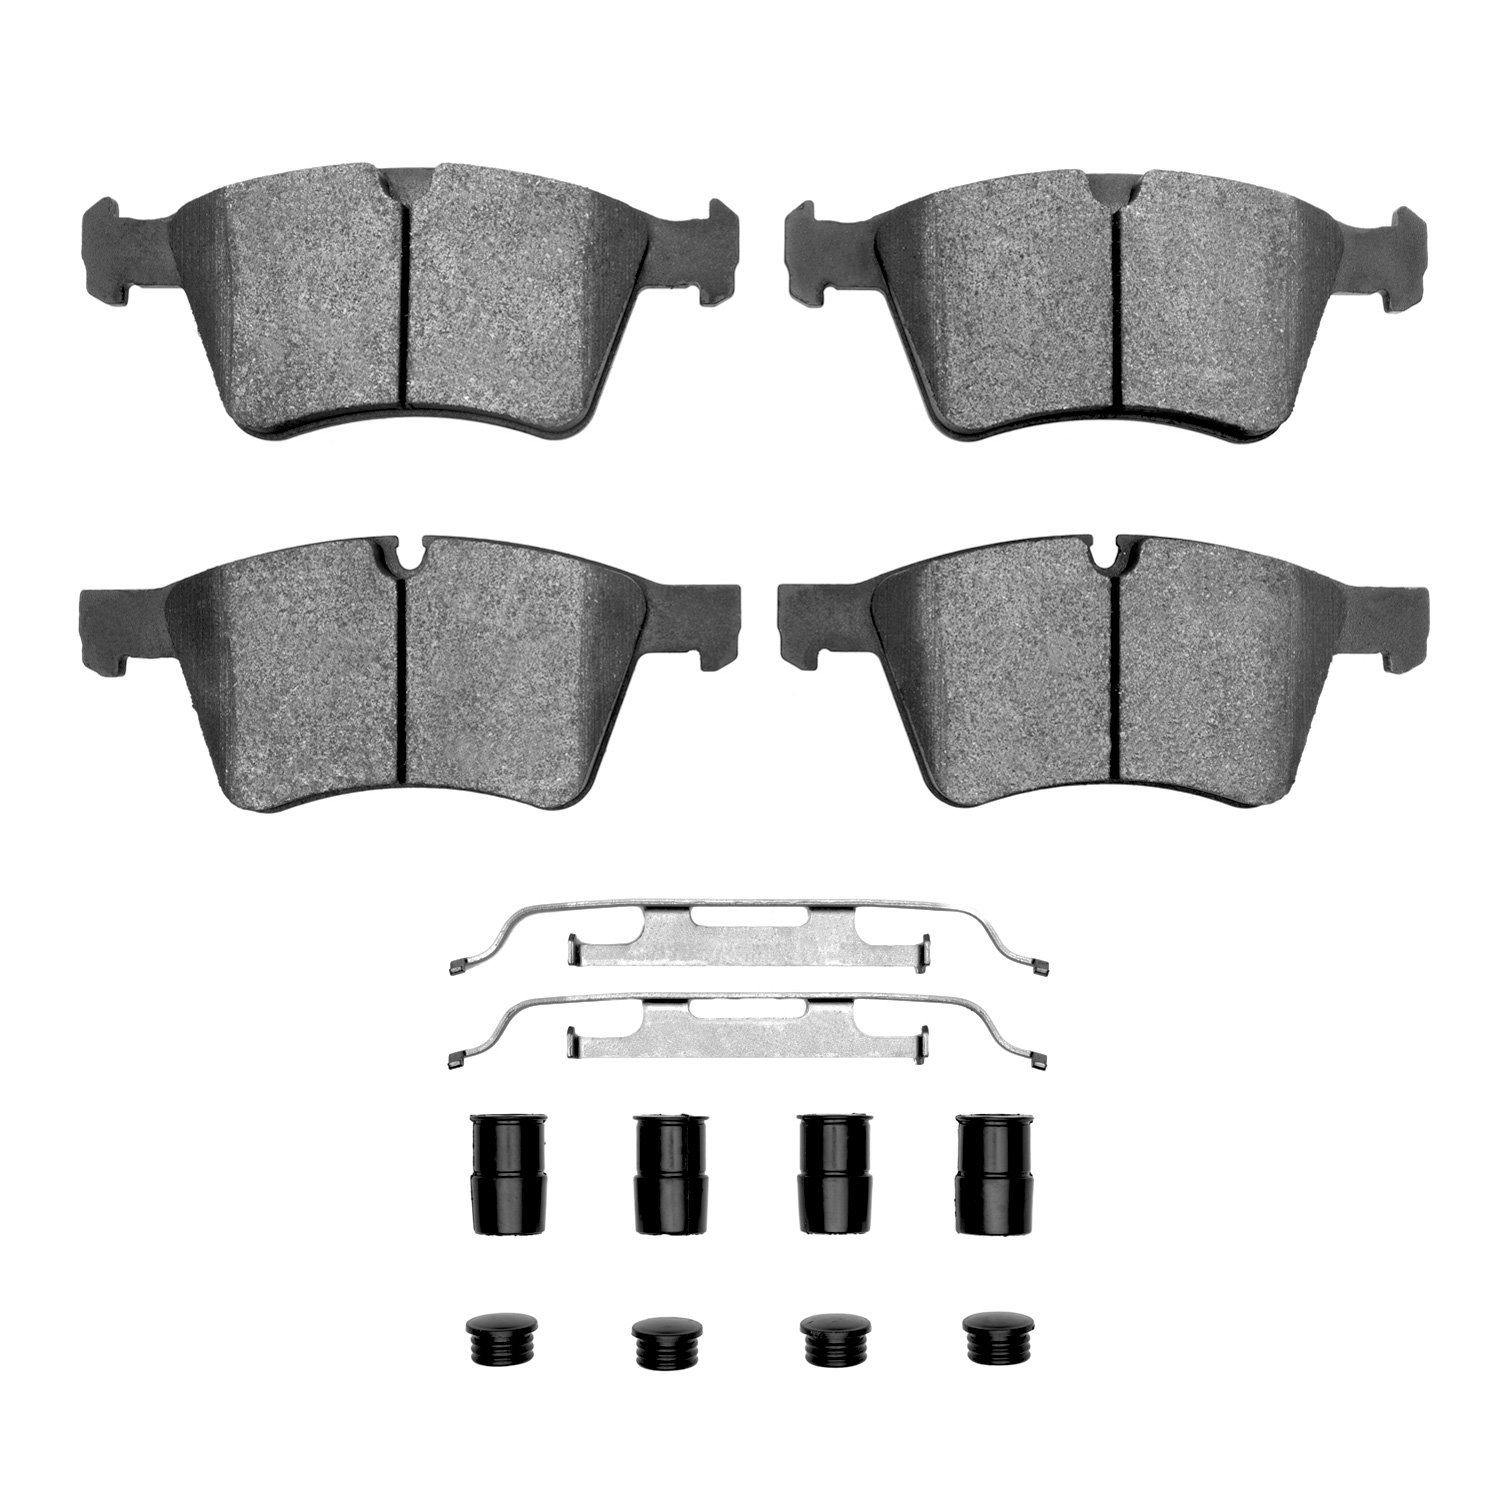 1311-1272-01 3000-Series Semi-Metallic Brake Pads & Hardware Kit, 2007-2009 Mercedes-Benz, Position: Front